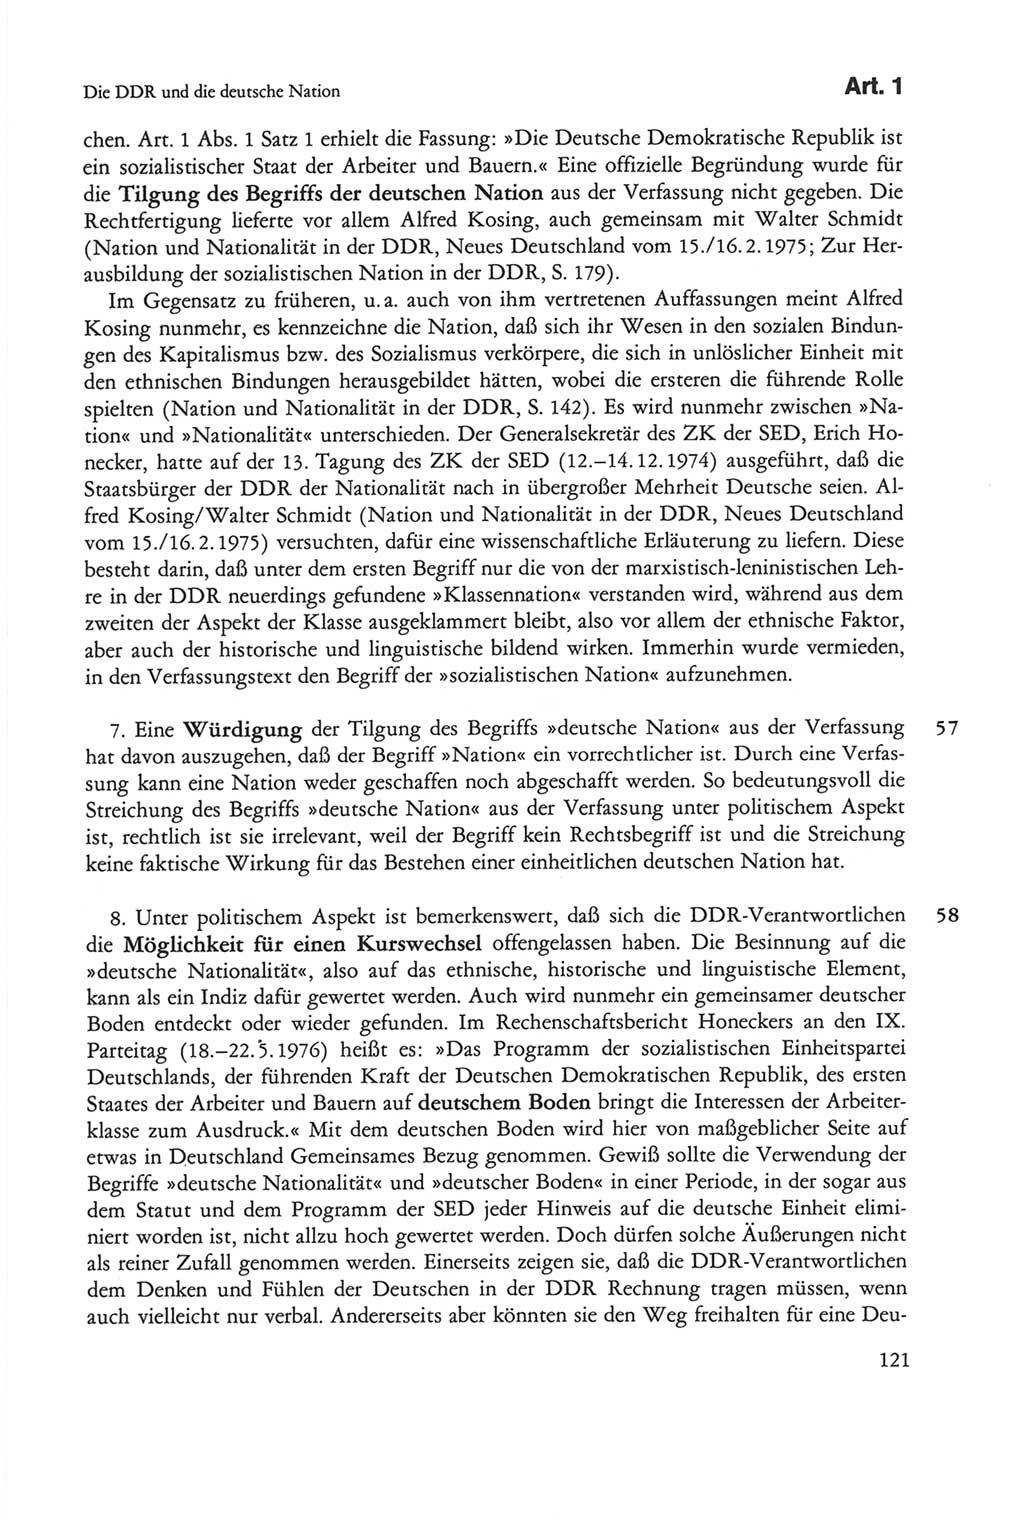 Die sozialistische Verfassung der Deutschen Demokratischen Republik (DDR), Kommentar mit einem Nachtrag 1997, Seite 121 (Soz. Verf. DDR Komm. Nachtr. 1997, S. 121)